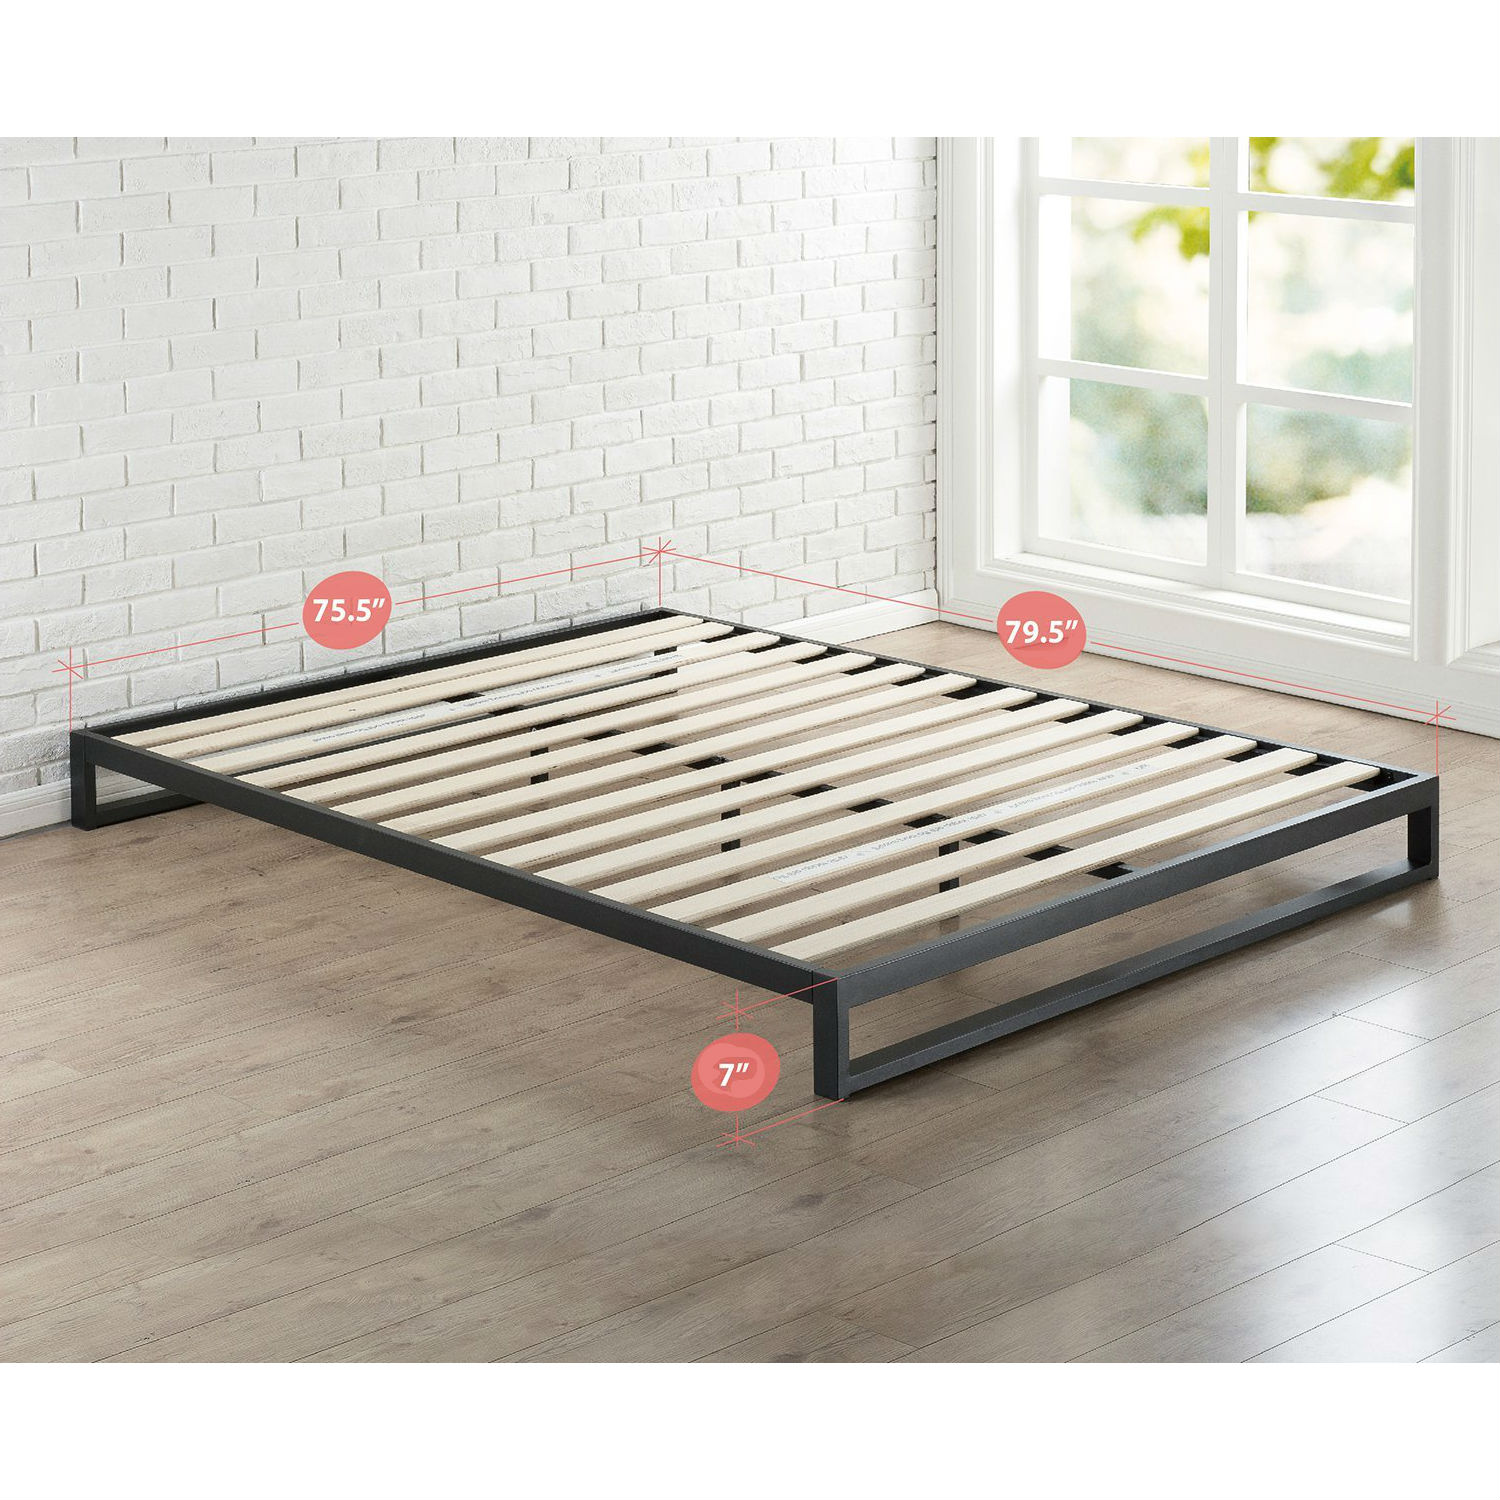 Metal Platform Bed Frame With Wood Slats, High Profile Metal Bed Frame King